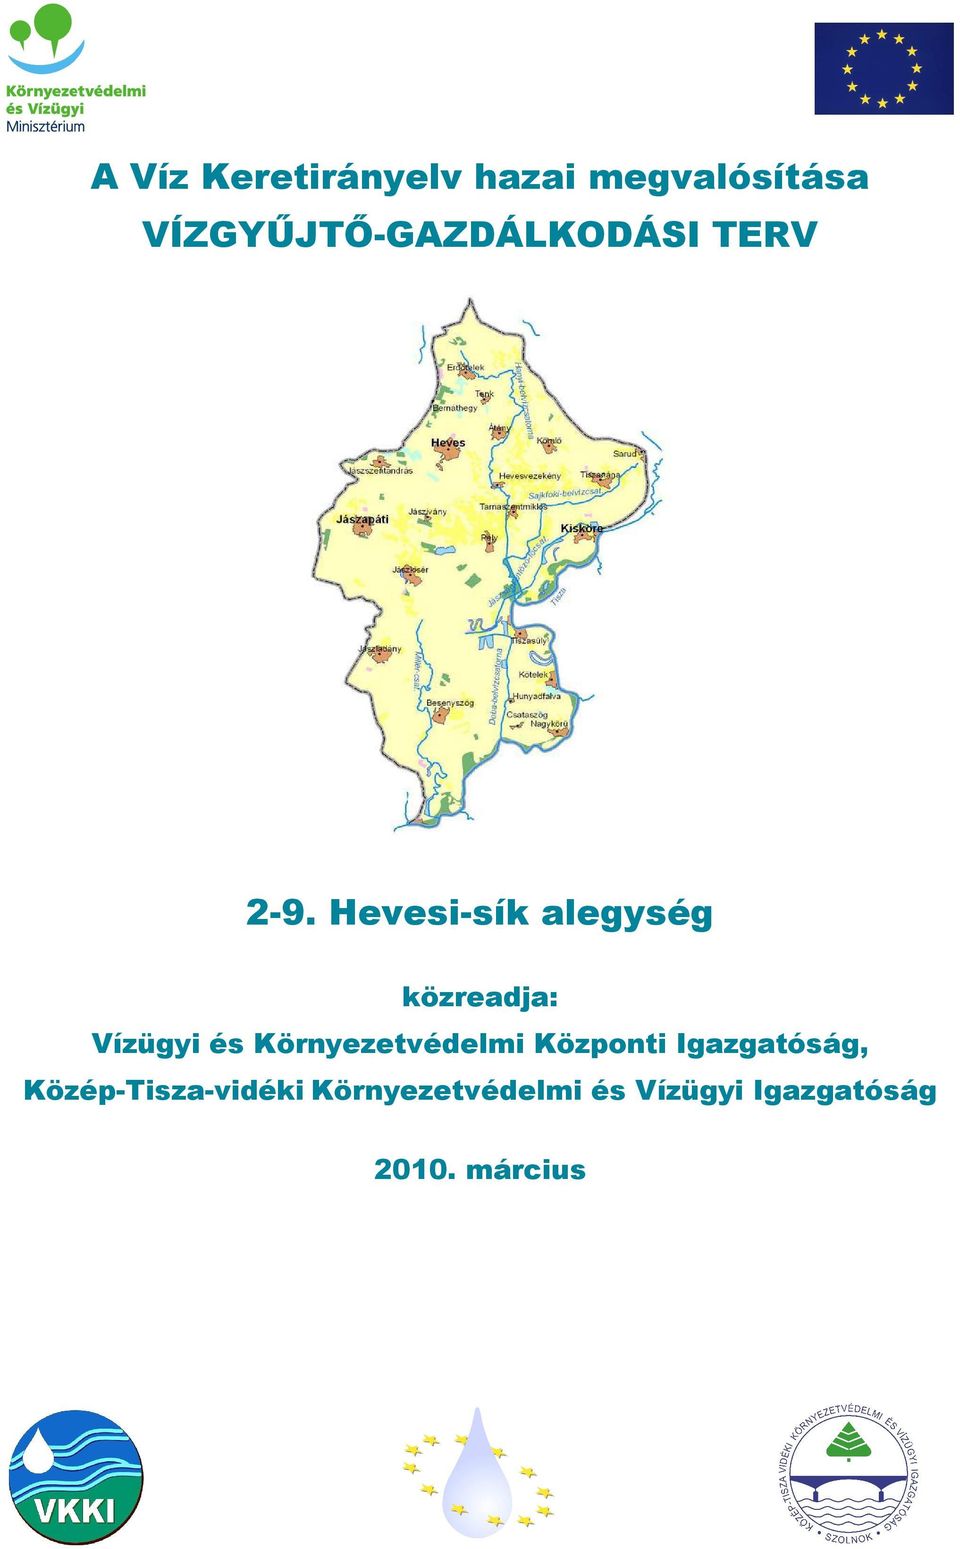 Hevesi-sík alegység közreadja: Vízügyi és Környezetvédelmi